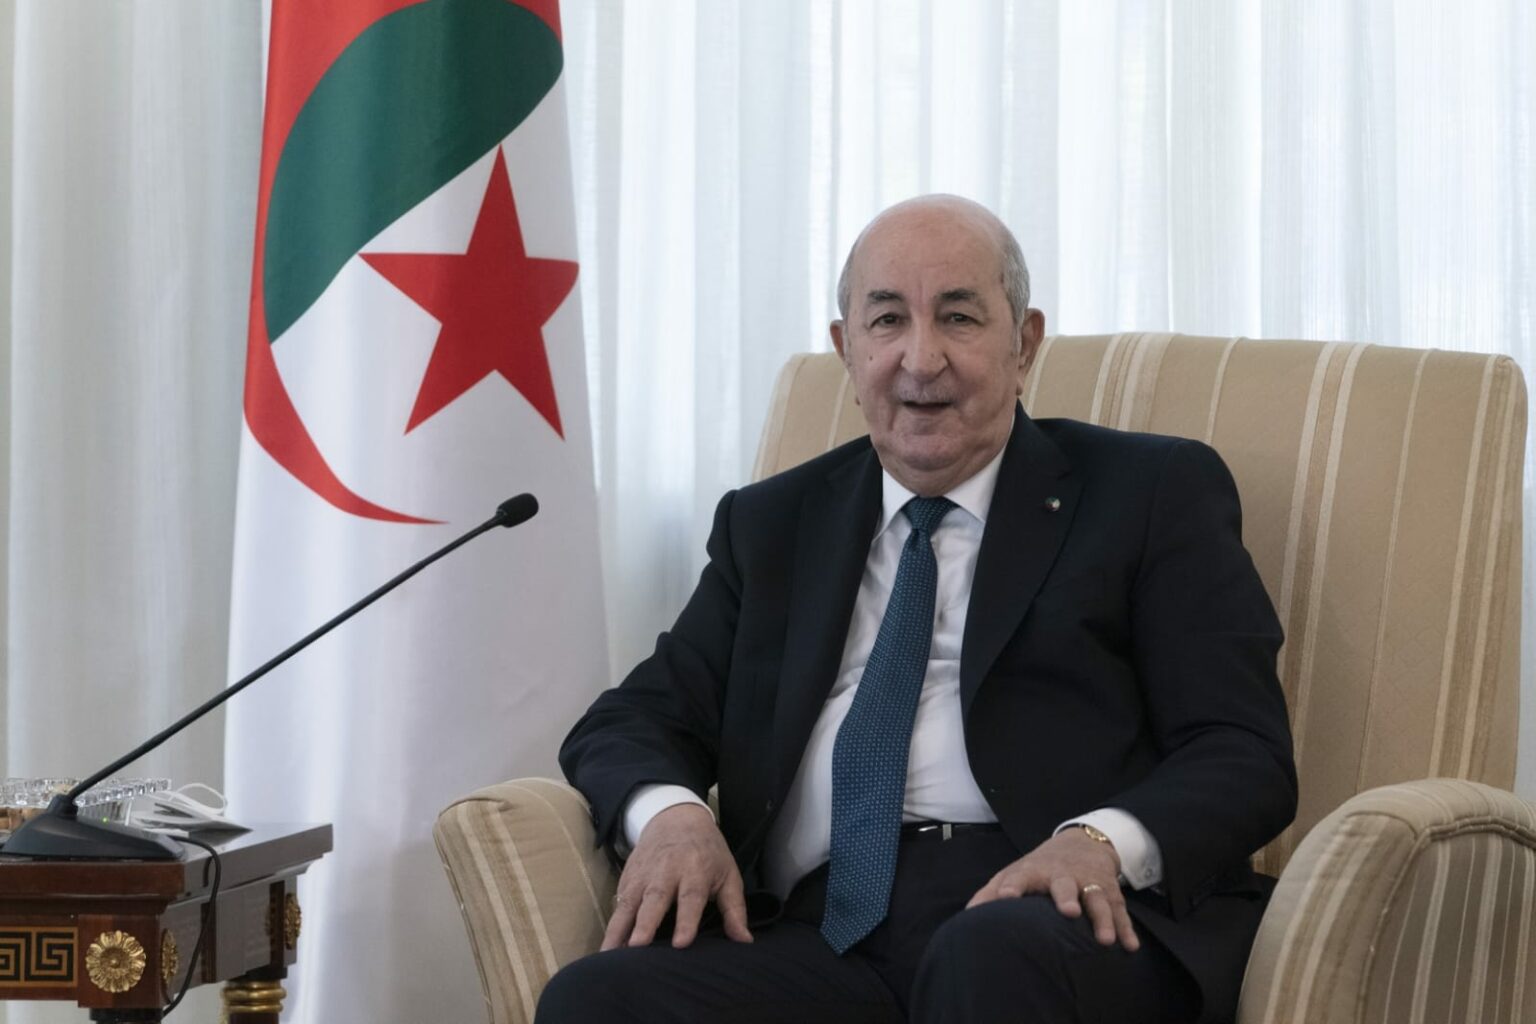 الرئيس الجزائري يختار هذا الرئيس العربي "الوحيد" لحضور افتتاح ألعاب البحر الأبيض المتوسط